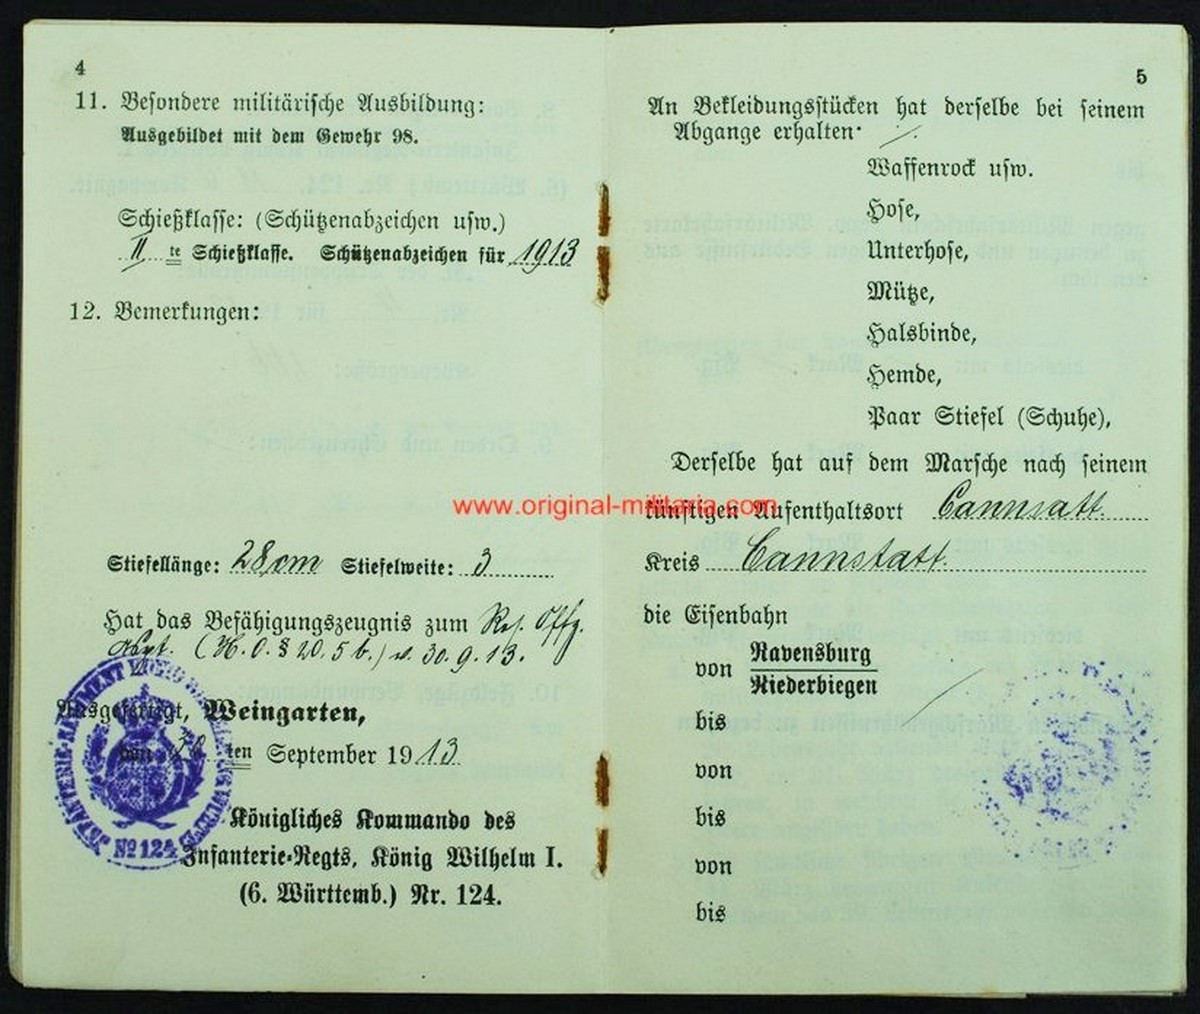 WW1/ Carnet Militar de un Soldado de Infantería de Rgt. "könig willem I"